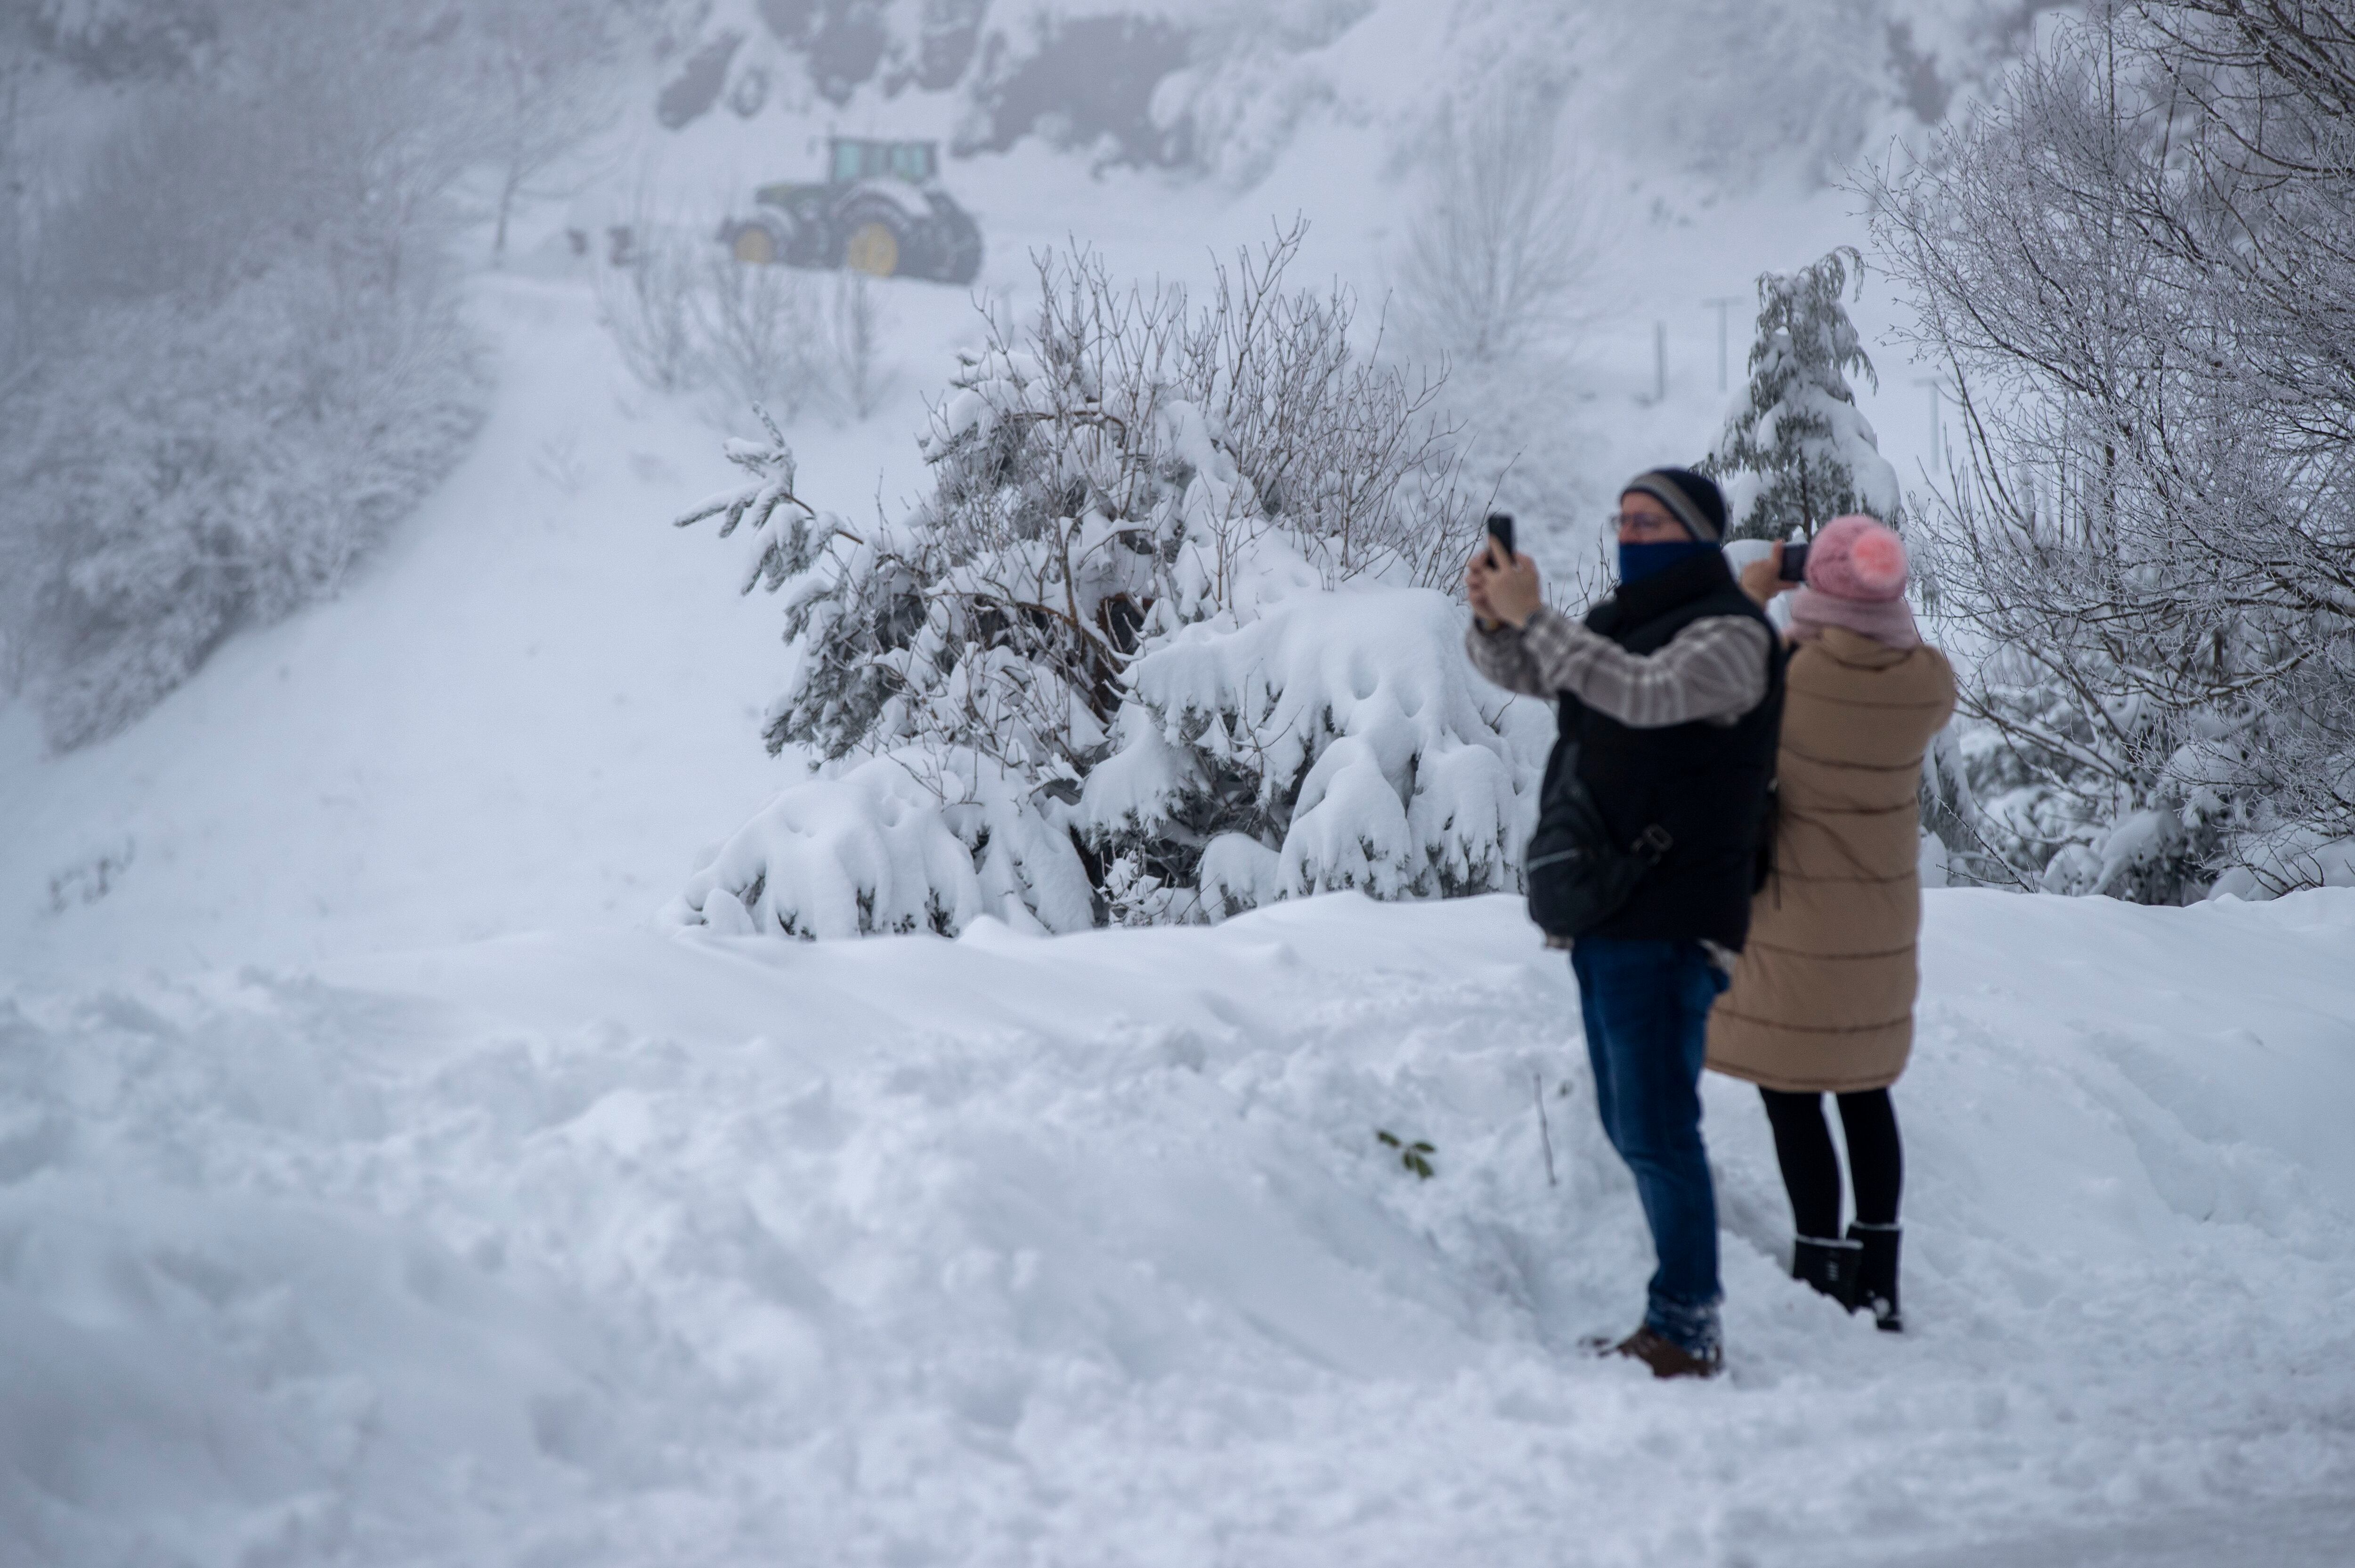 Un grupo de personas se divierte fotografiando la nieve, que cubre la totalidad de la calzada, este miércoles en Pedrafita do Cebreiro.